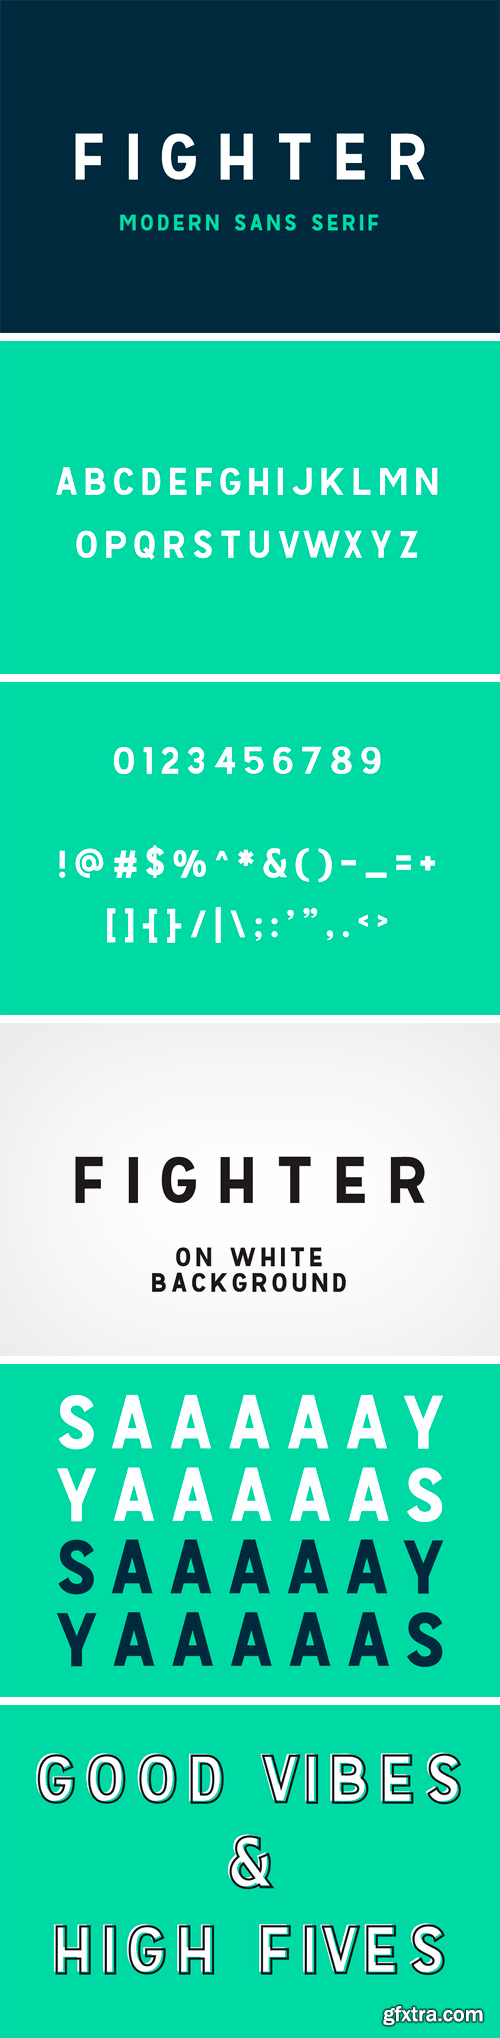 CM 1581434 - Fighter - Moder Sans Serif Font